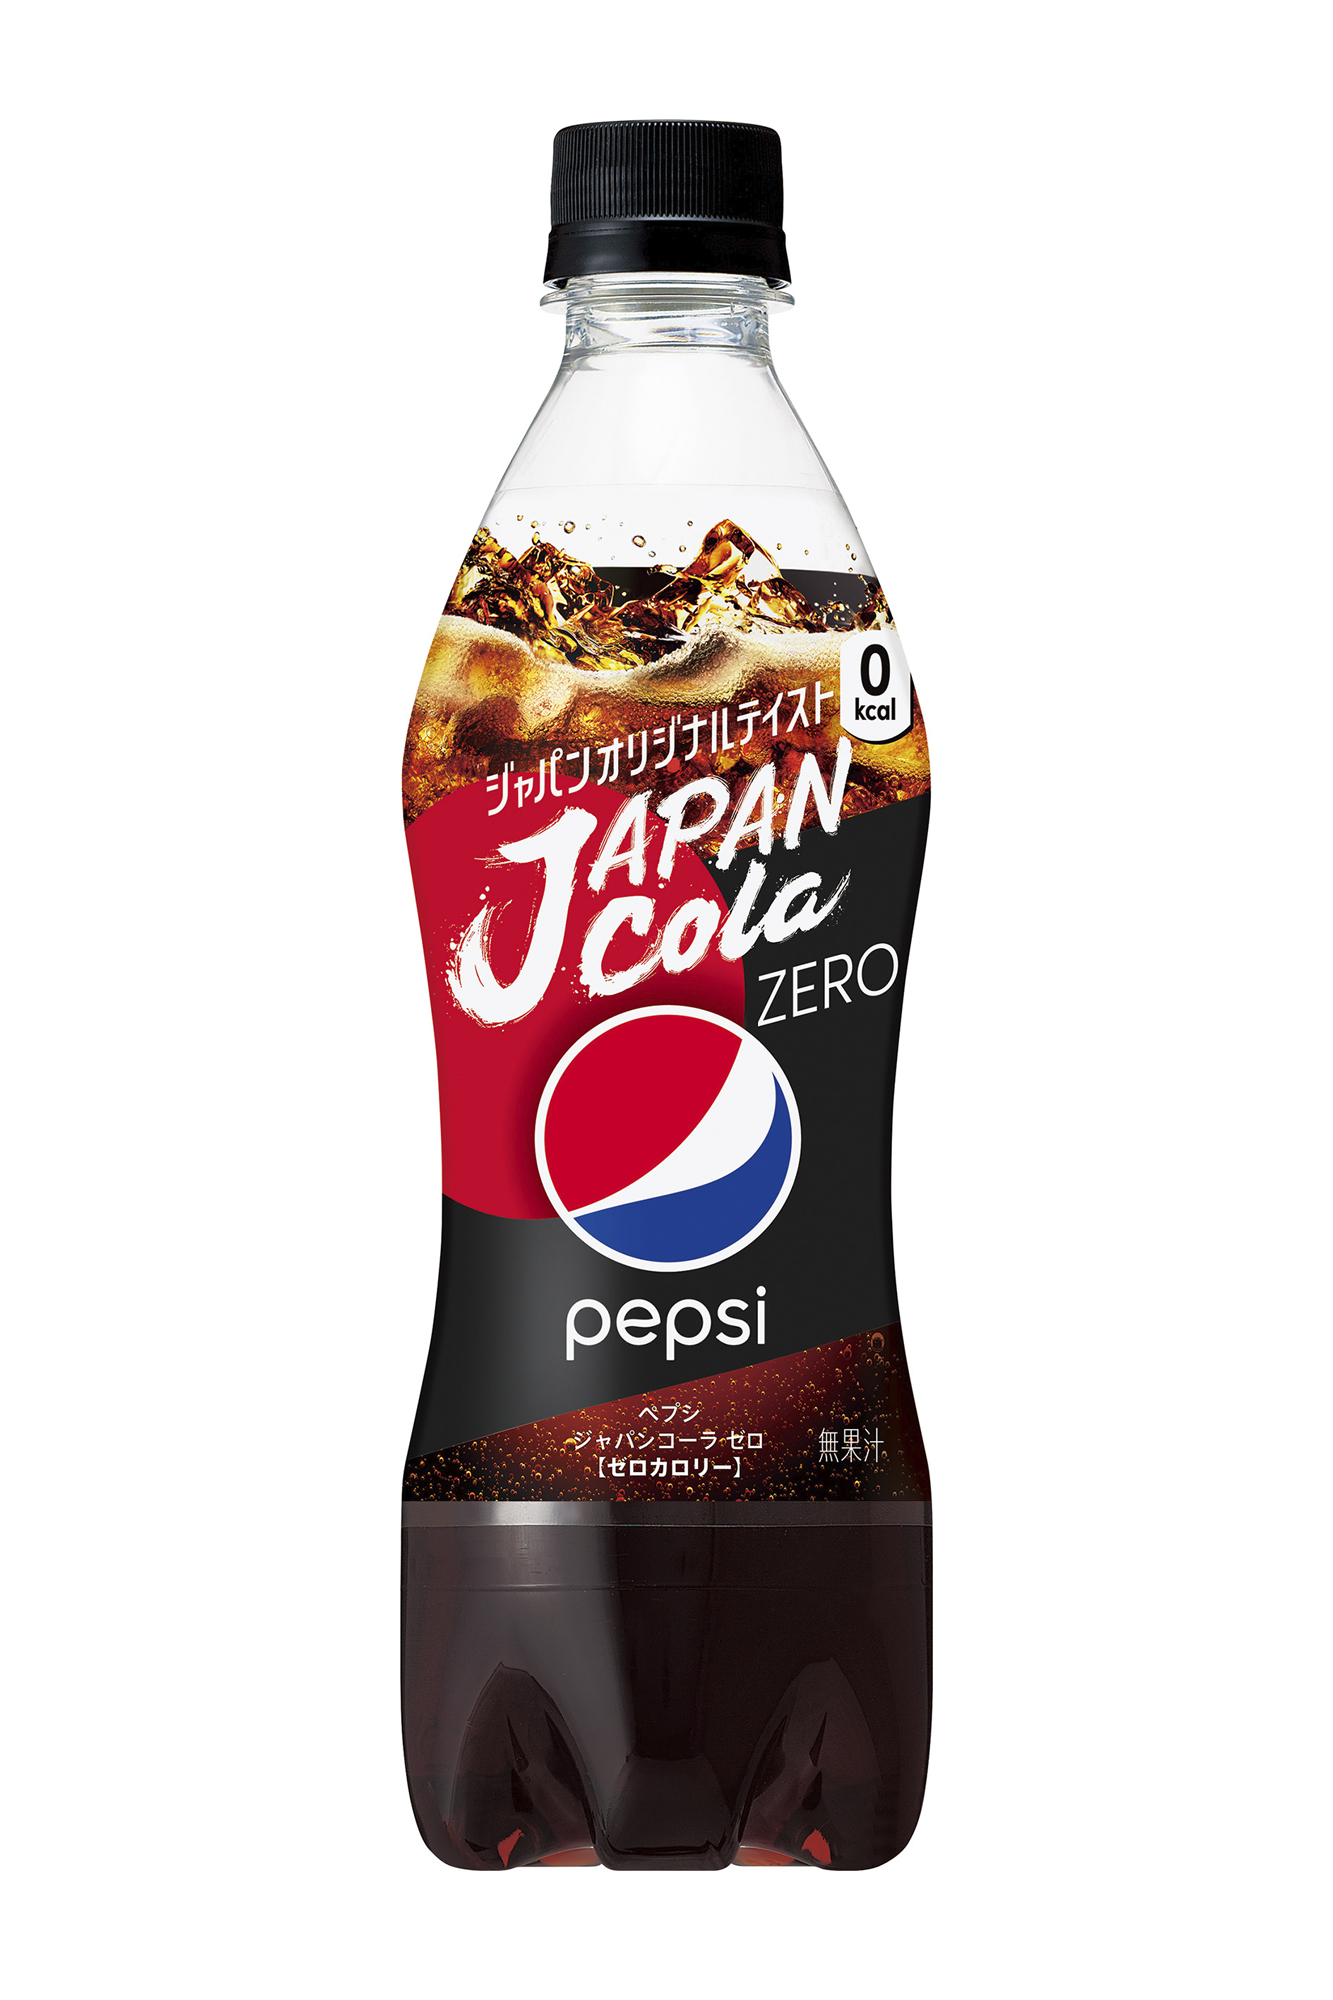 日本の コーラ好き が うまい と唸る味わいを追求 ペプシ ジャパンコーラ 誕生 日本限定商品 ニュースリリース サントリー食品インターナショナル